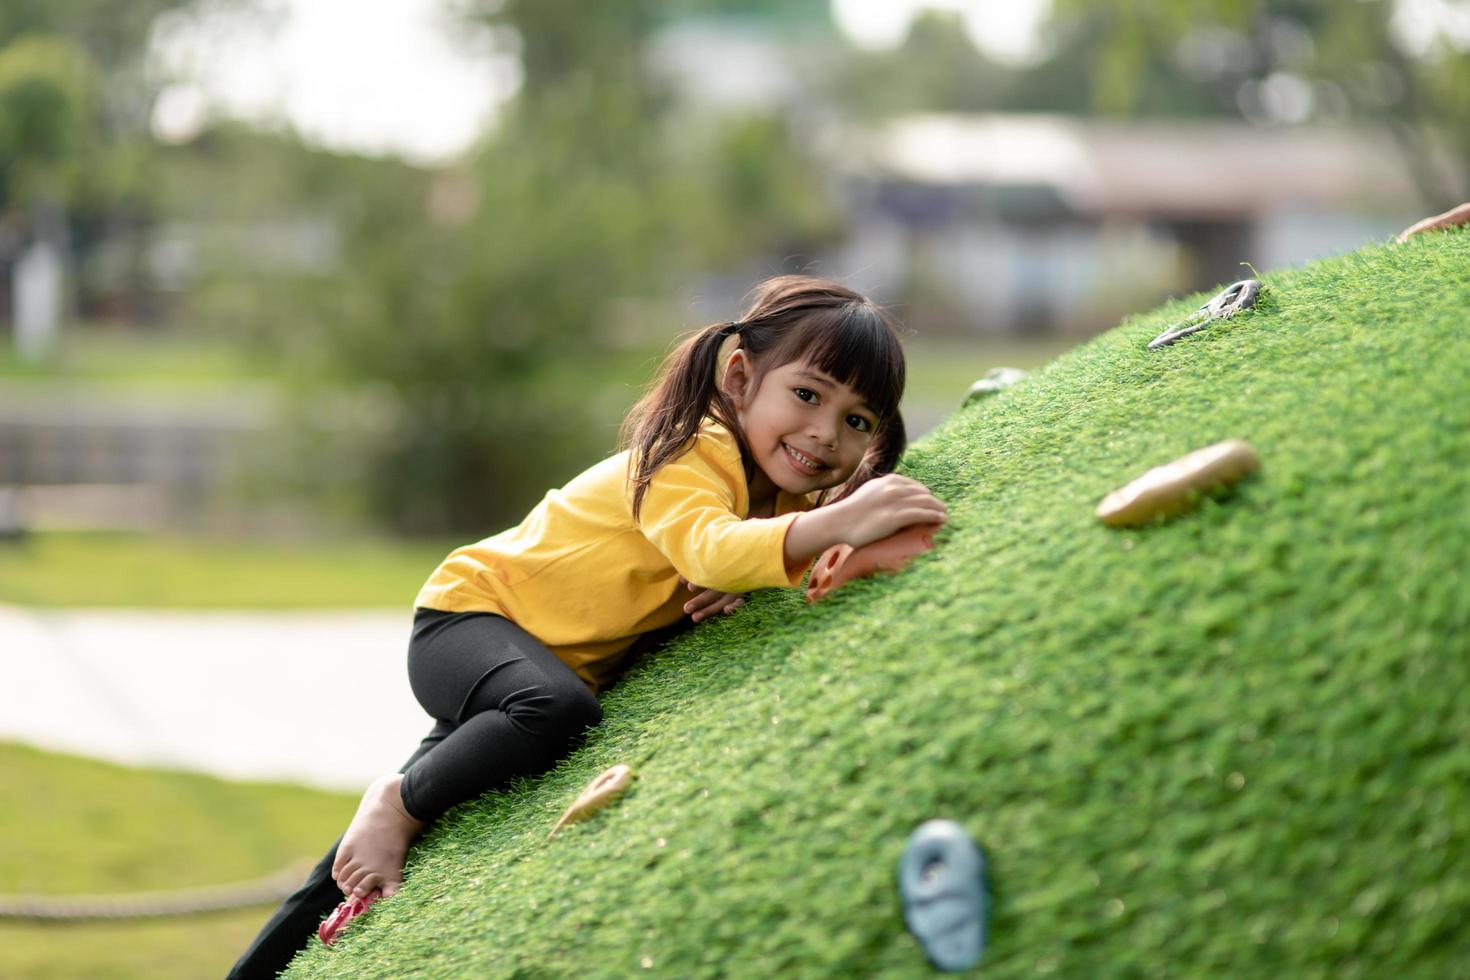 jolie fille asiatique s'amusant à essayer de grimper sur des rochers artificiels dans la cour d'école, petite fille grimpant sur la paroi rocheuse, coordination œil-main, développement des compétences photo